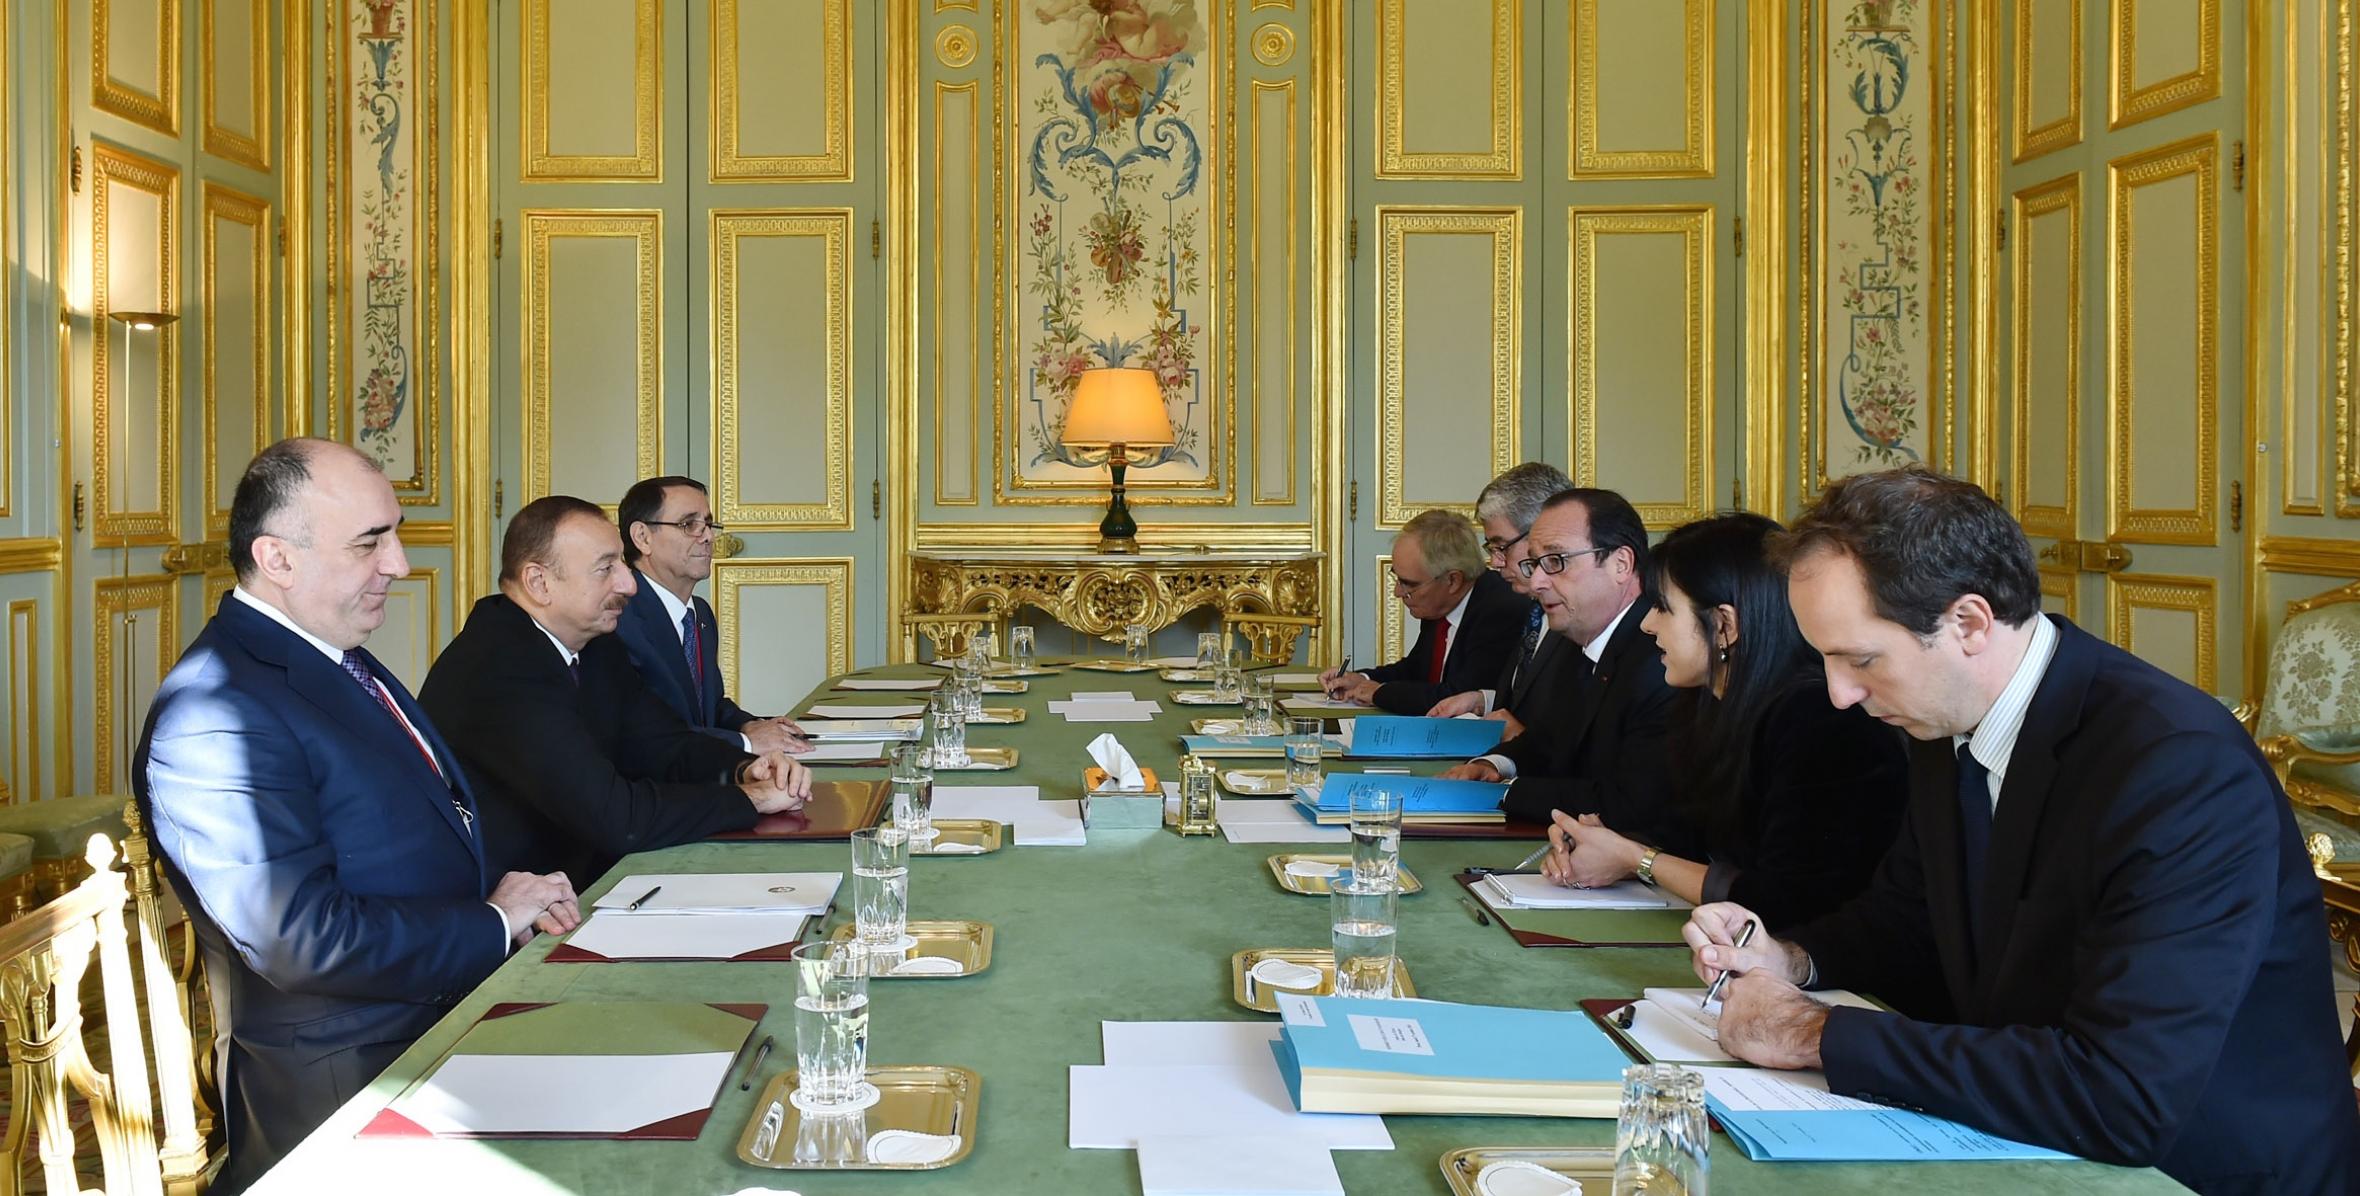 Ilham Aliyev met with President of France François Hollande